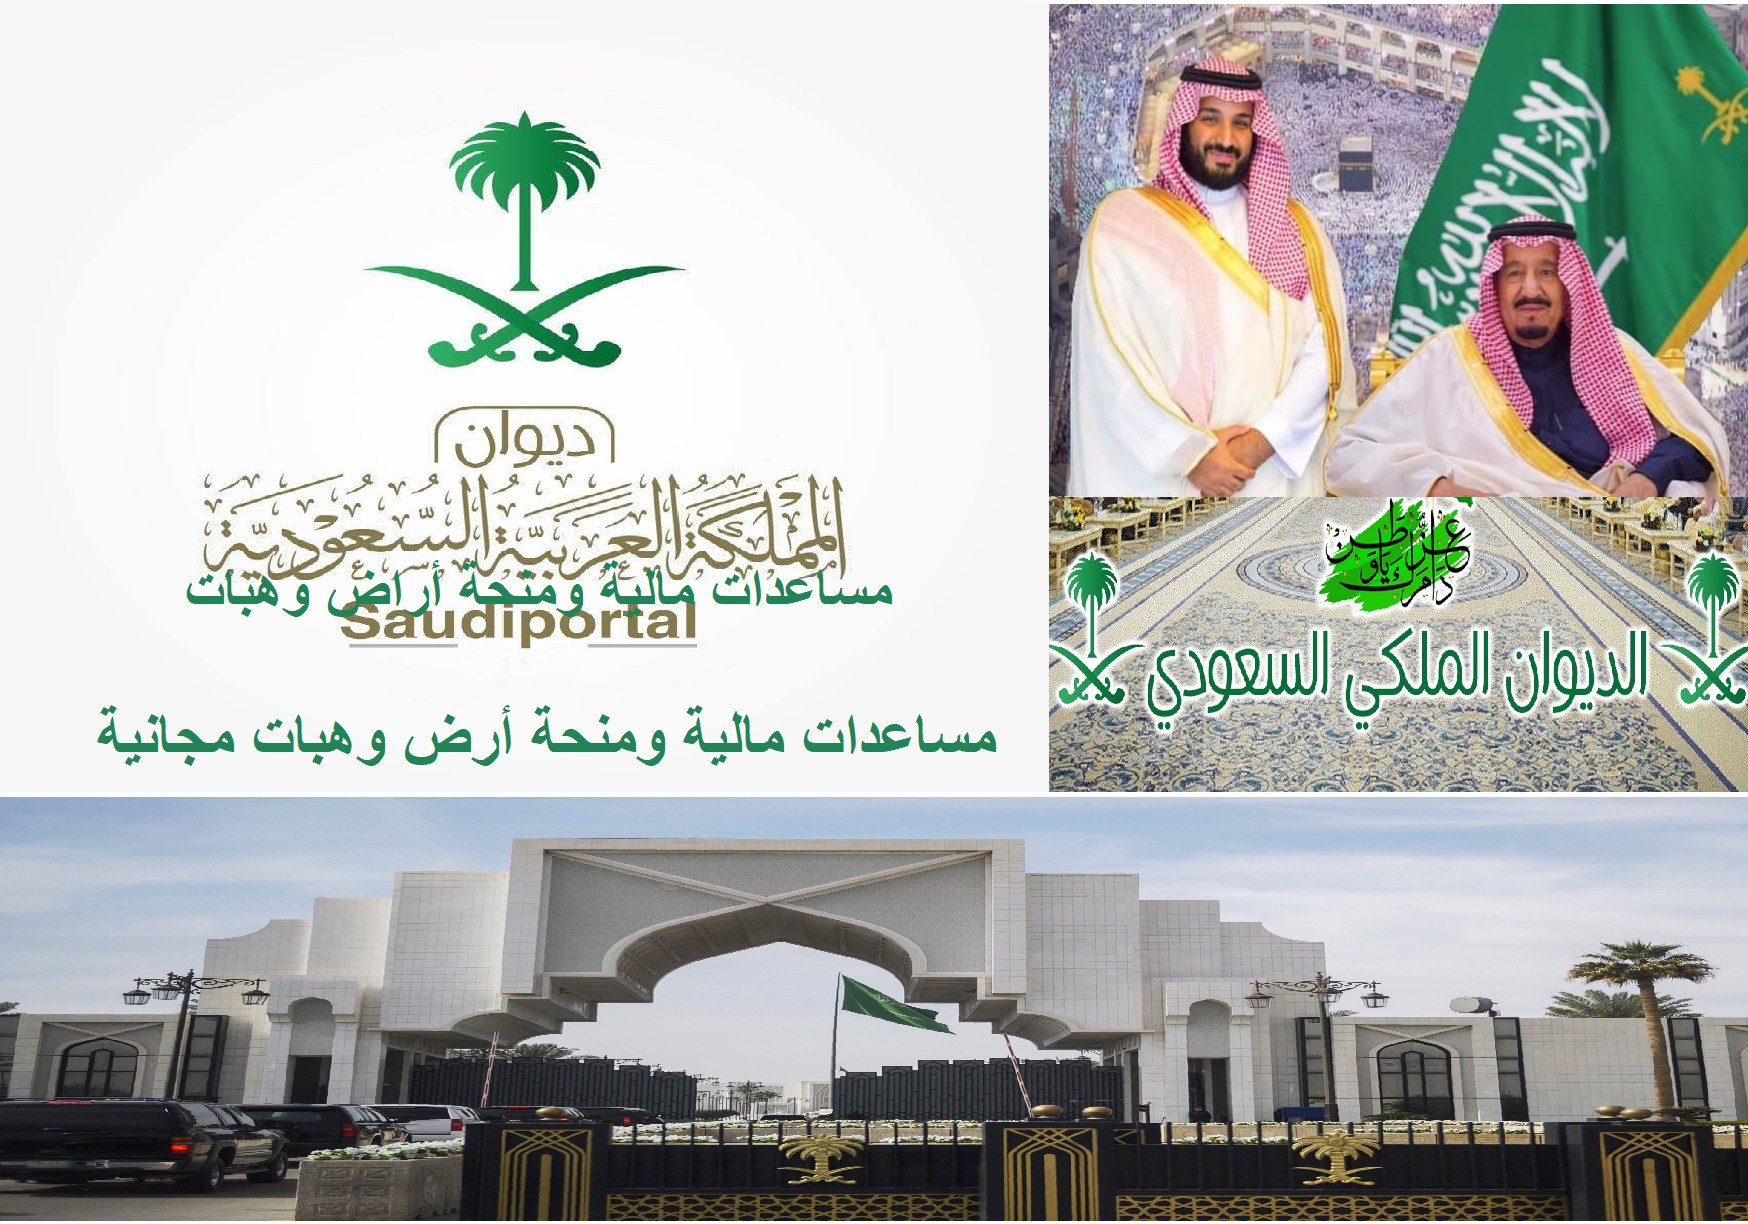 الديوان الملكي السعودي للمساعدات tawasol.royalcourt.gov.sa طلب مساعدة مالية أو منحة أرض مجانية